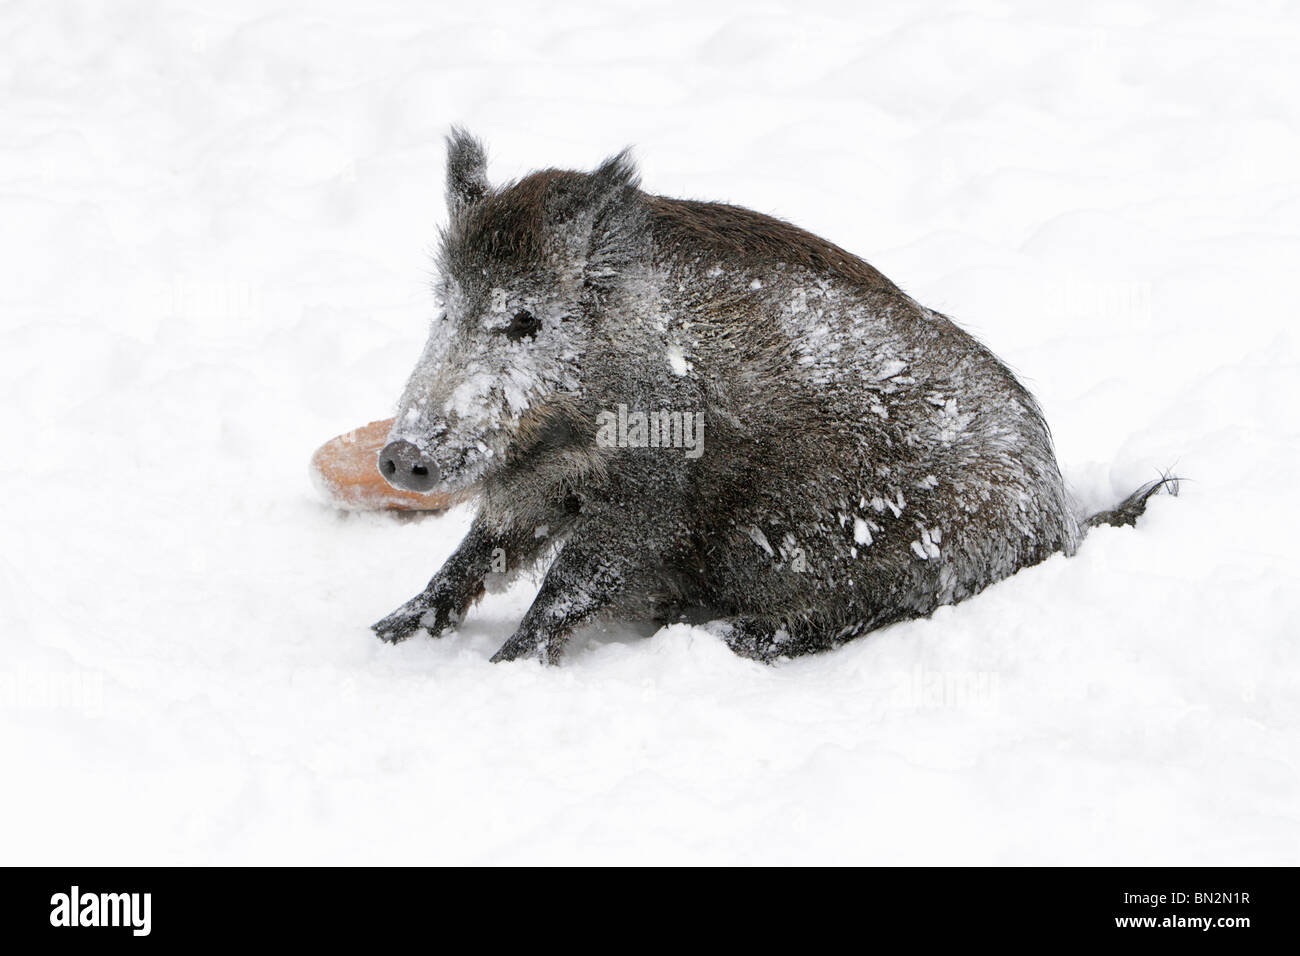 Européen de porc ou de sanglier (Sus scrofa), sow assis, couvertes de neige, après avoir roulé dans la neige, Allemagne Banque D'Images